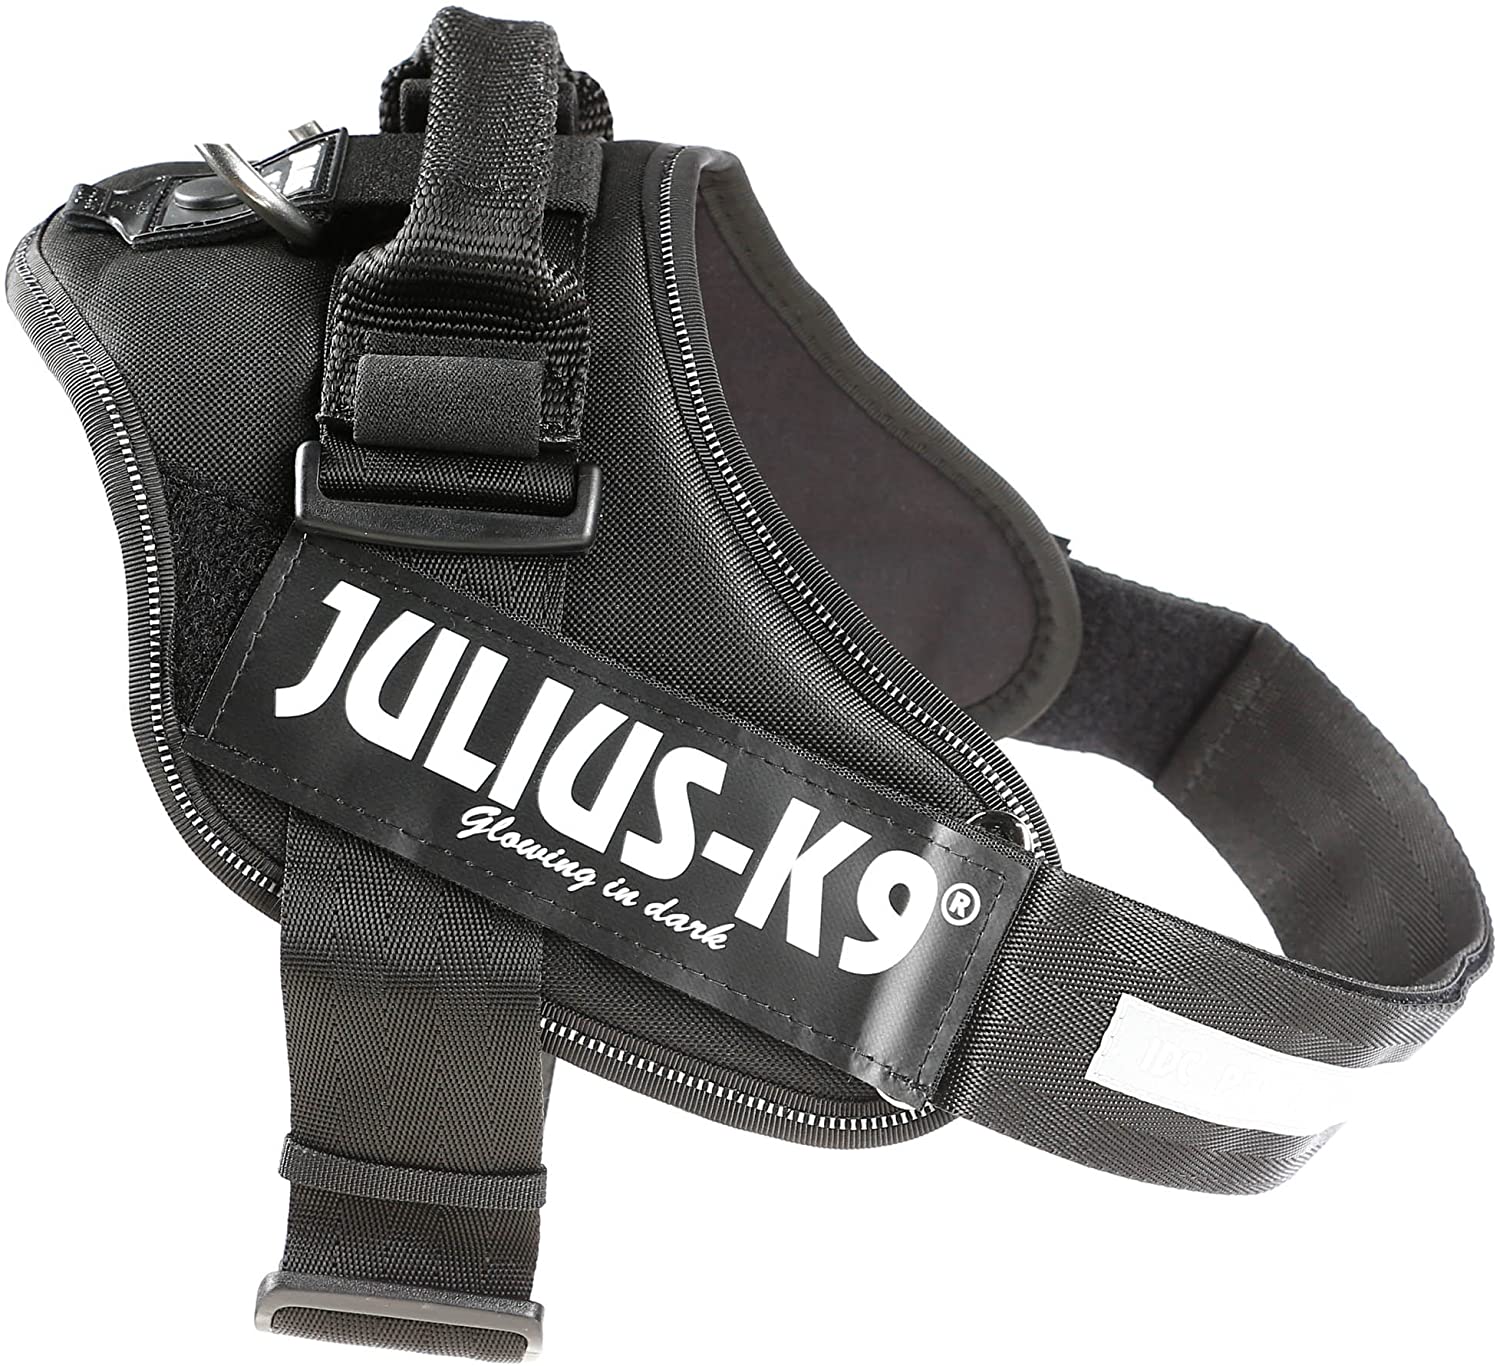  Julius-K9 16IDC-P2+ IDC Power Harness con la Cerradura de Seguridad, Tamaño 2, Negro 